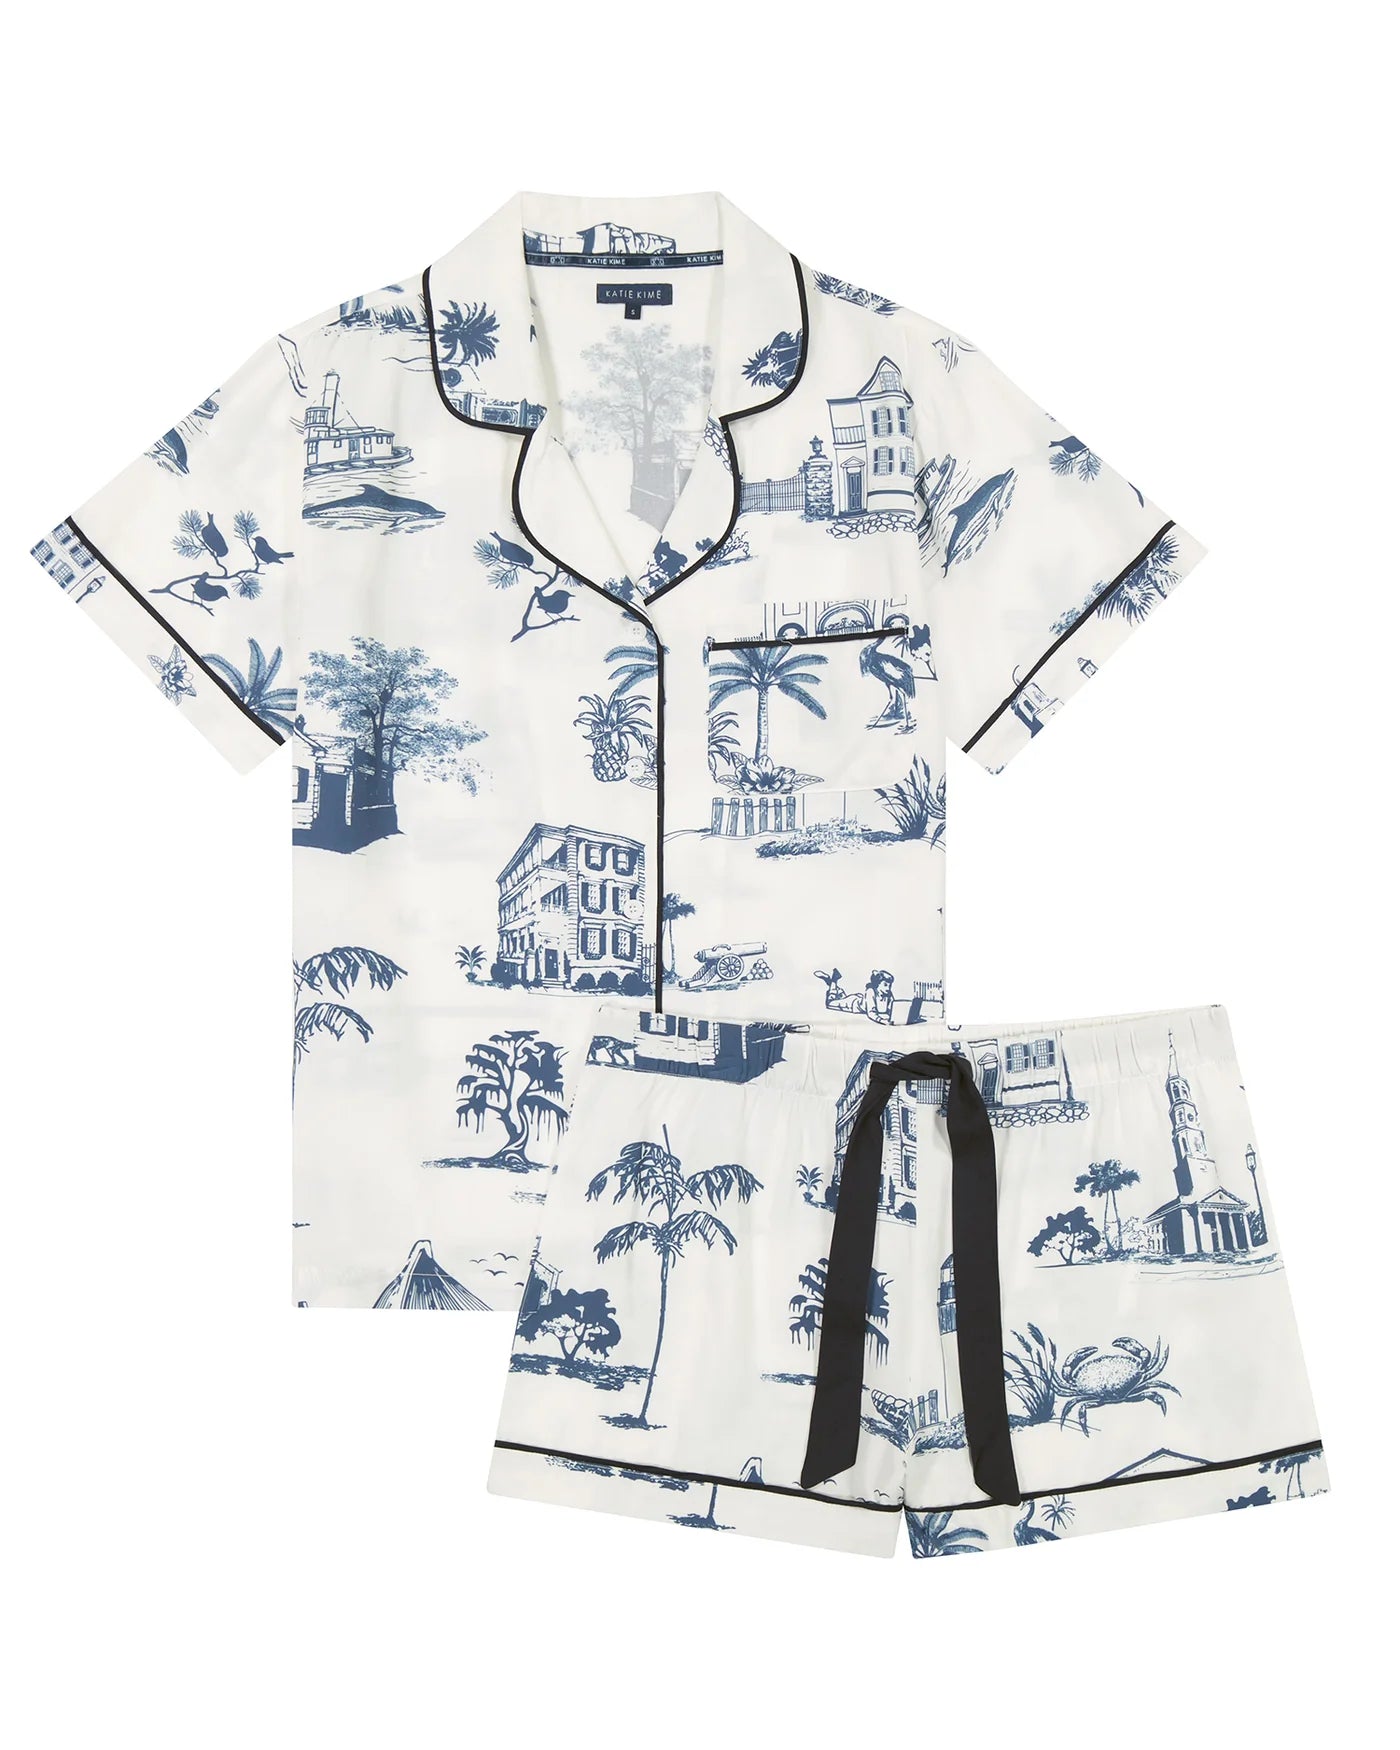 Charleston Toile Pajamas Short Set - Navy - Katie Kime